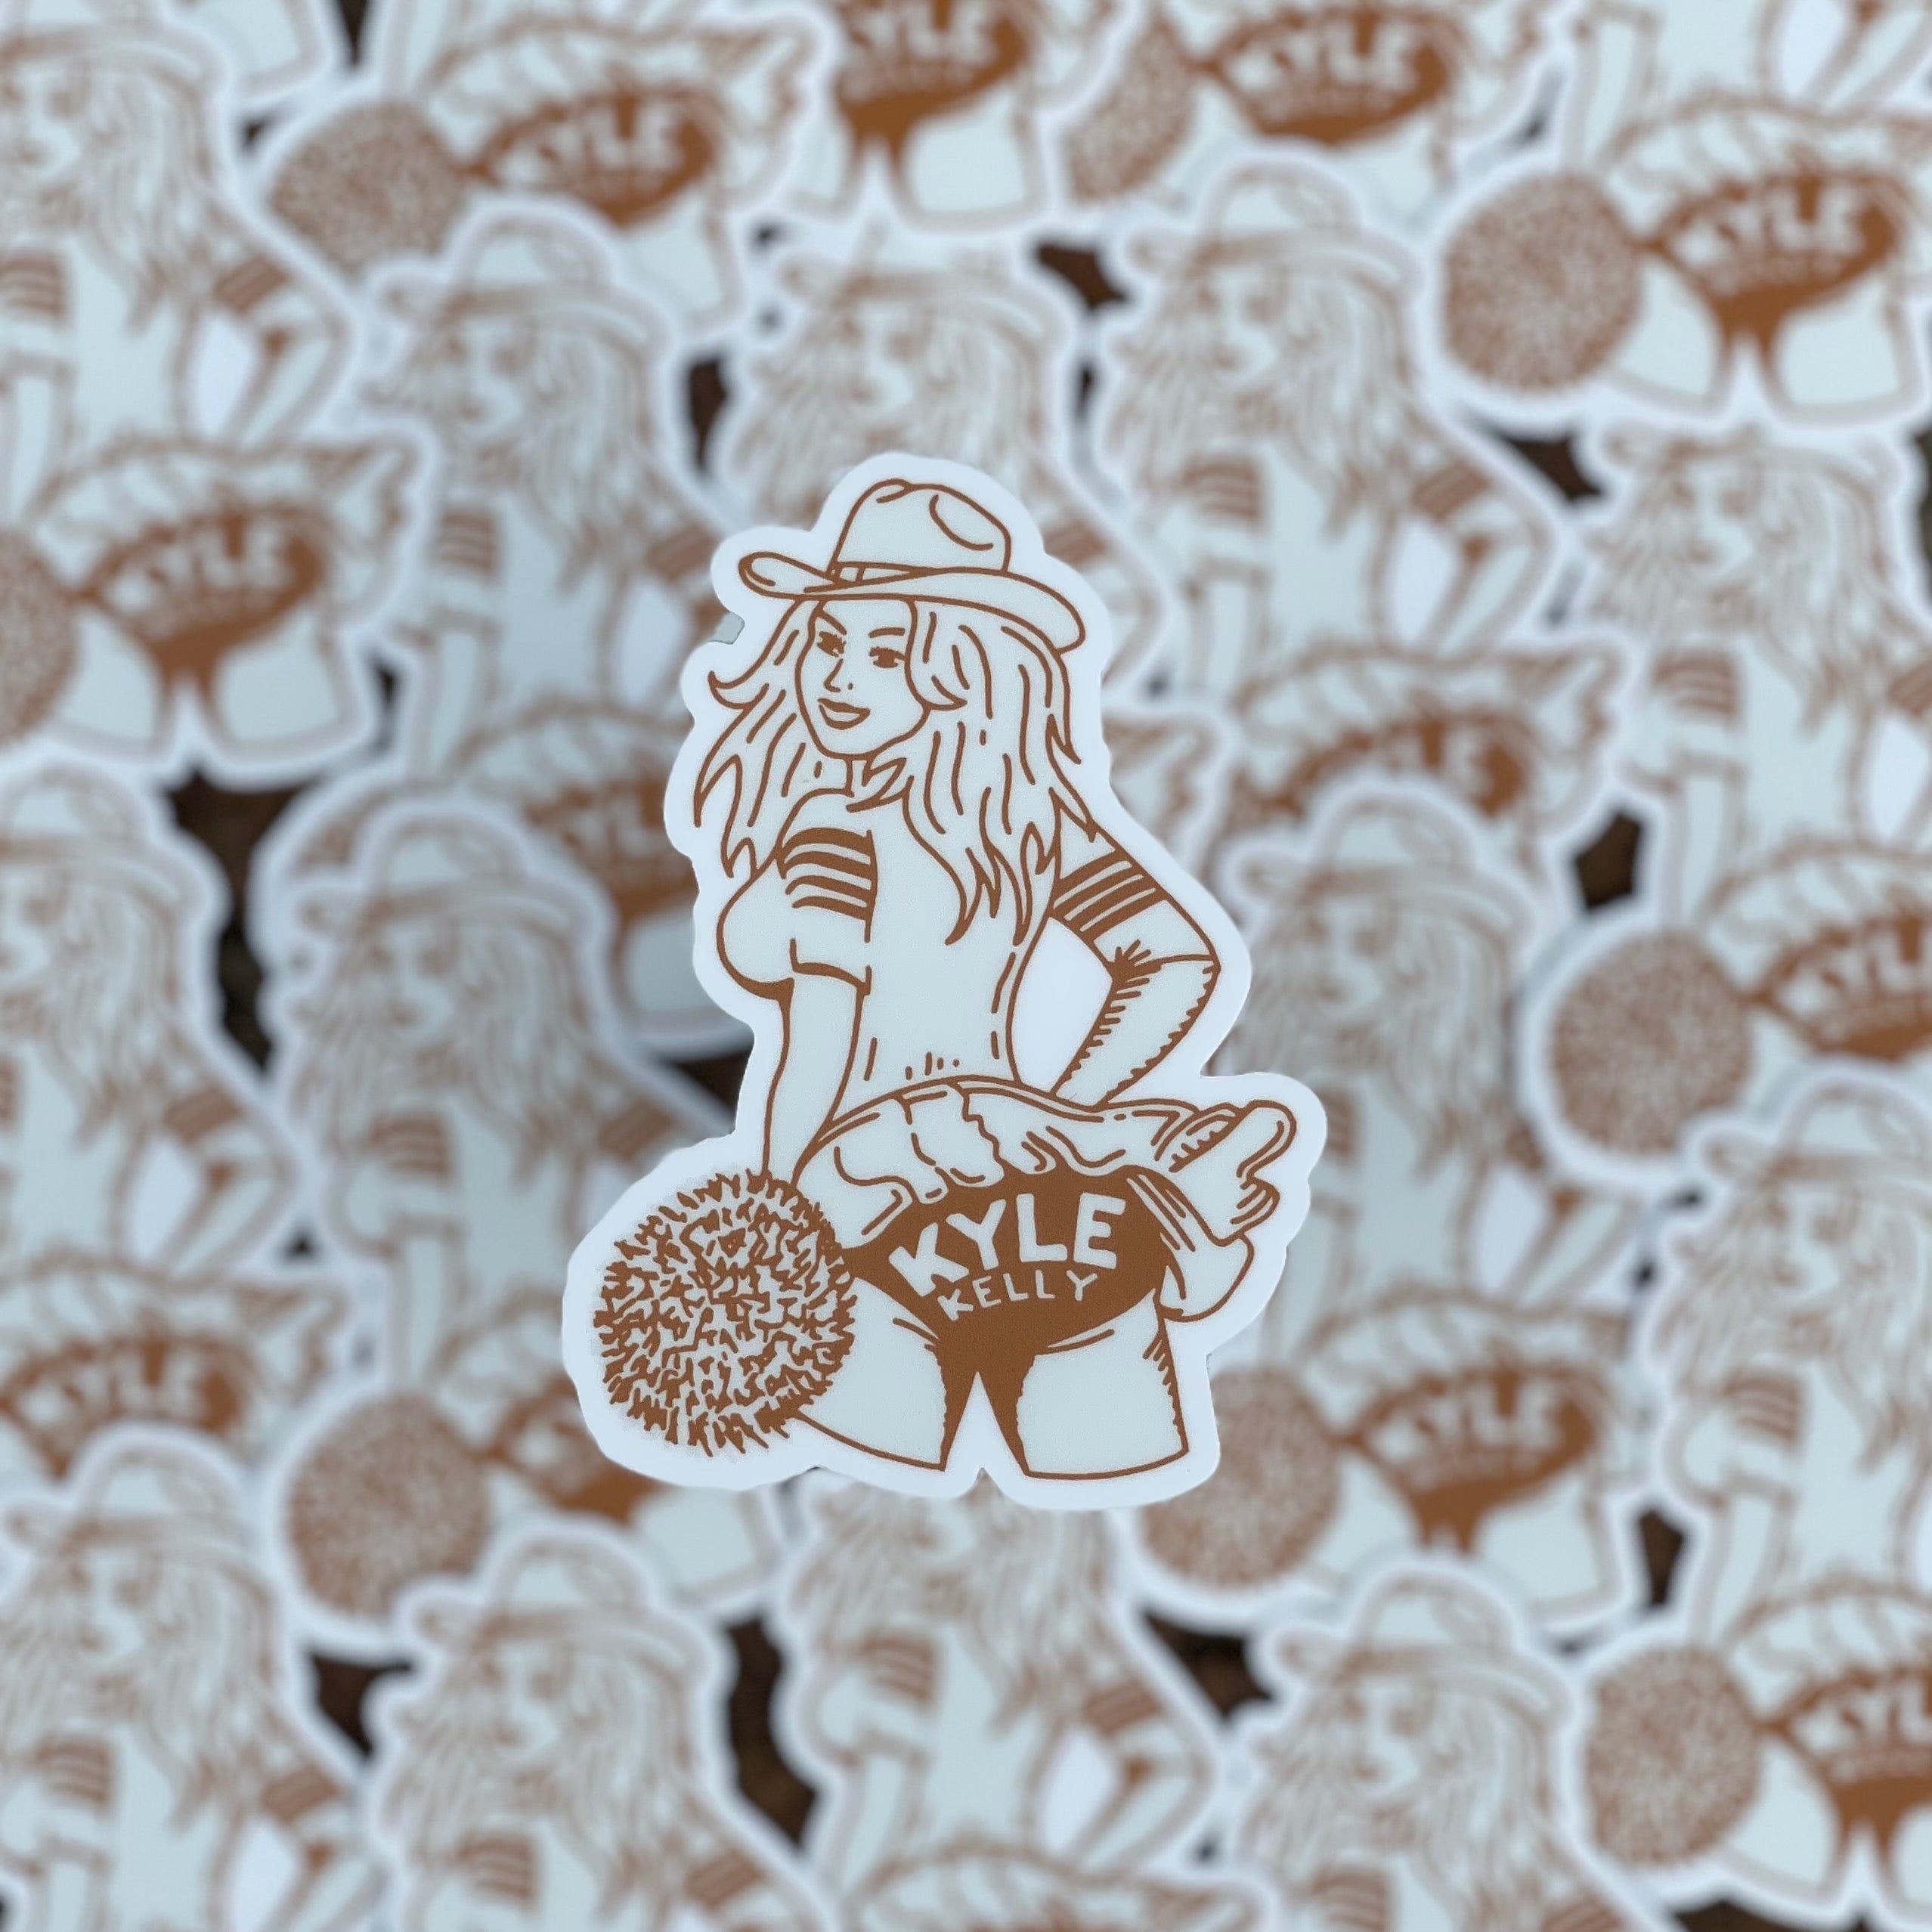 The Kylegirl Sticker